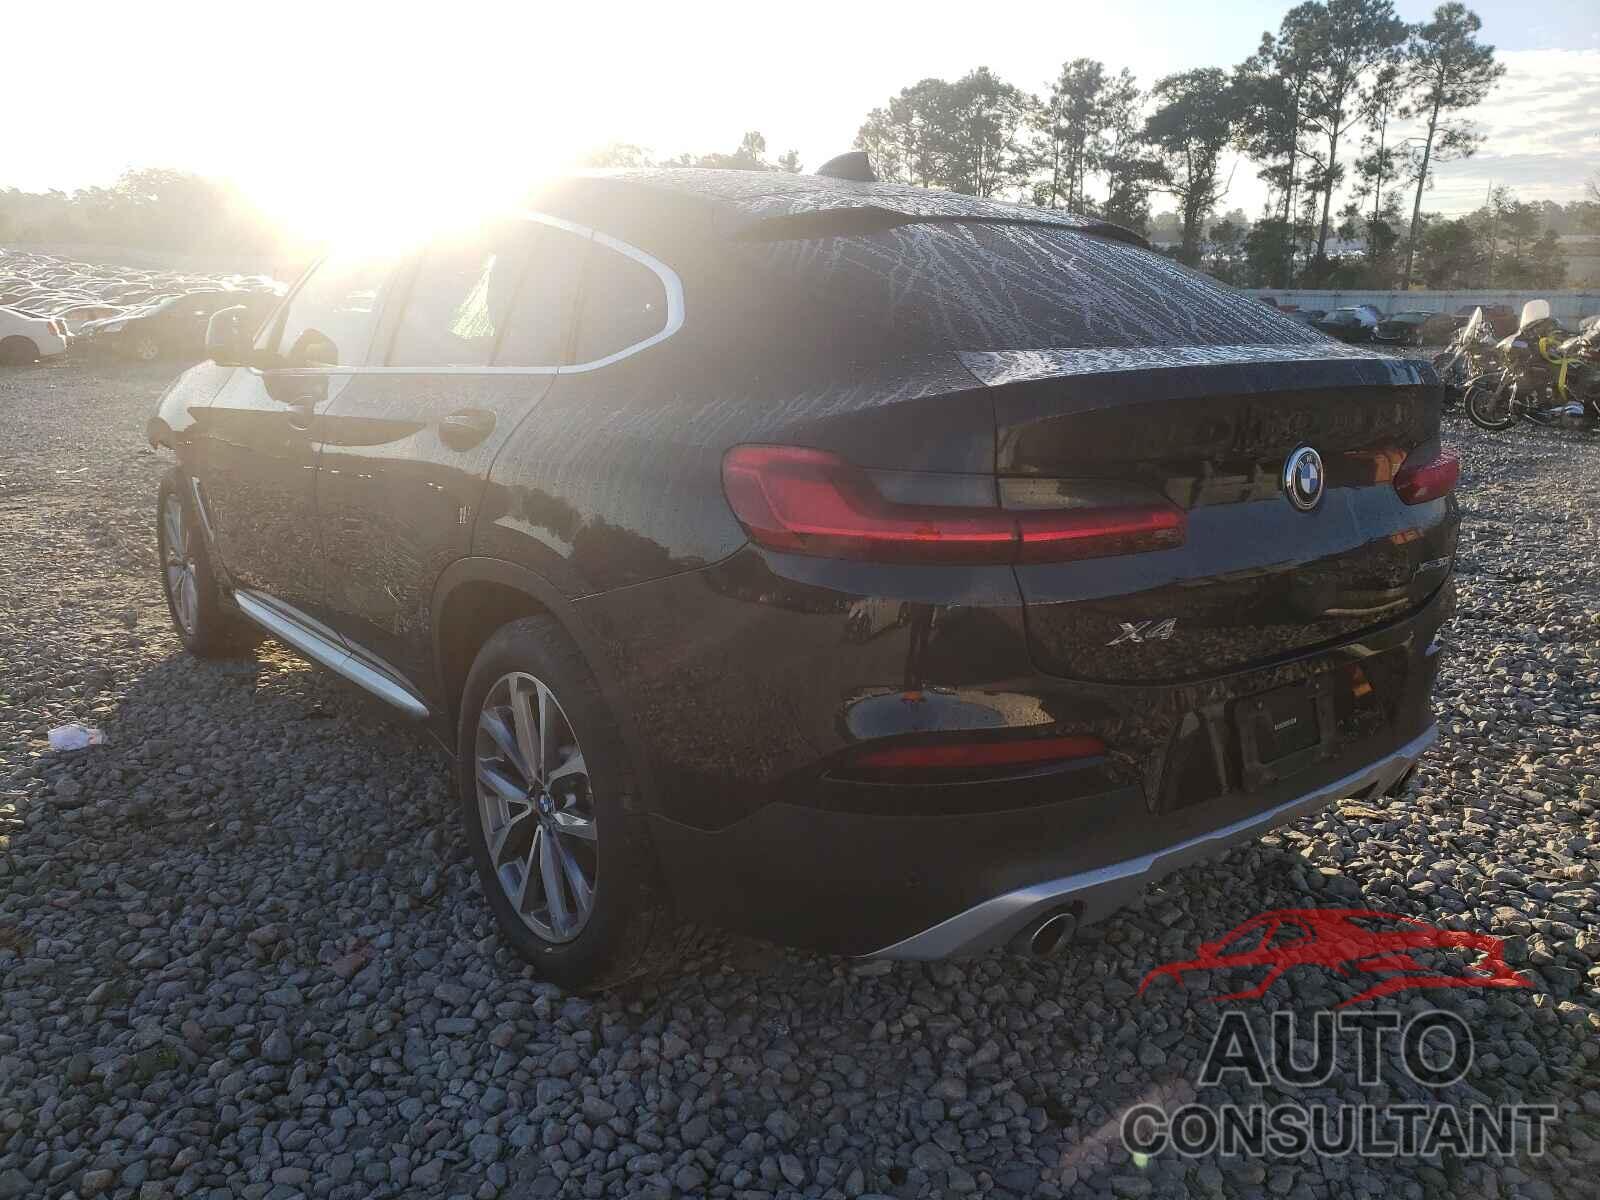 BMW X4 2019 - 5UXUJ3C57KLG53547